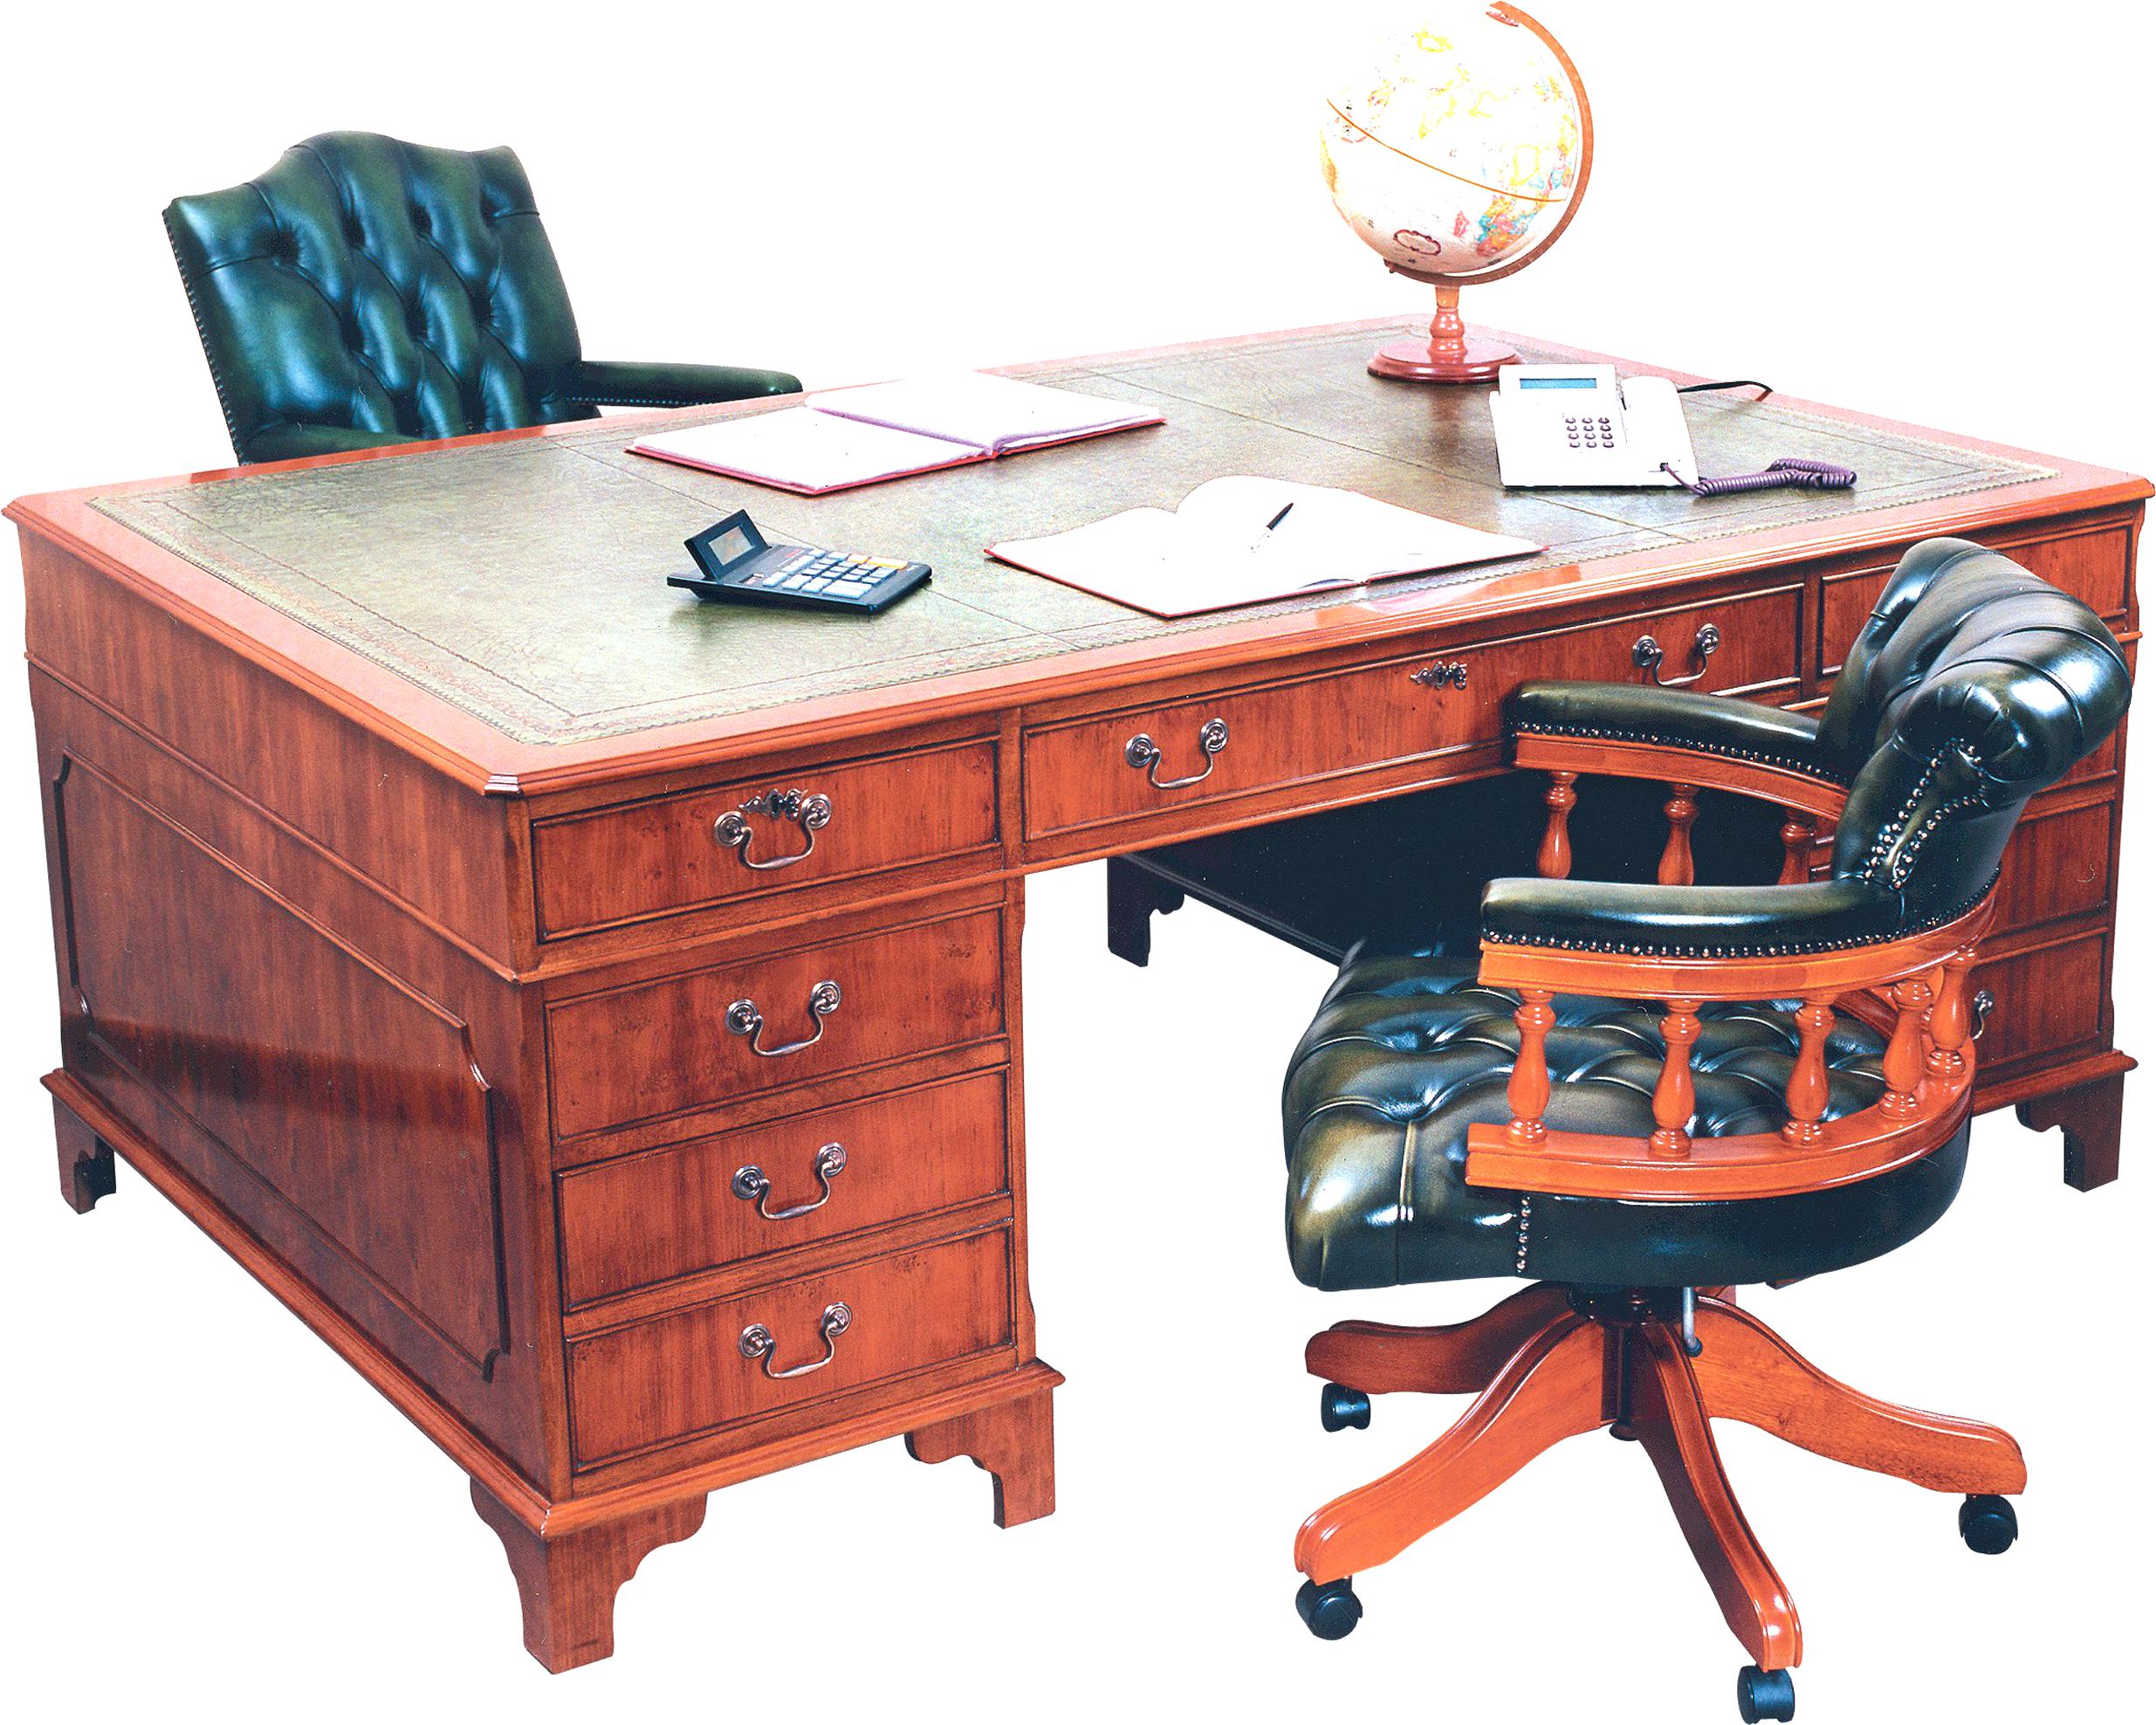 Partners Desk For Sale In Uk 74 Used Partners Desks